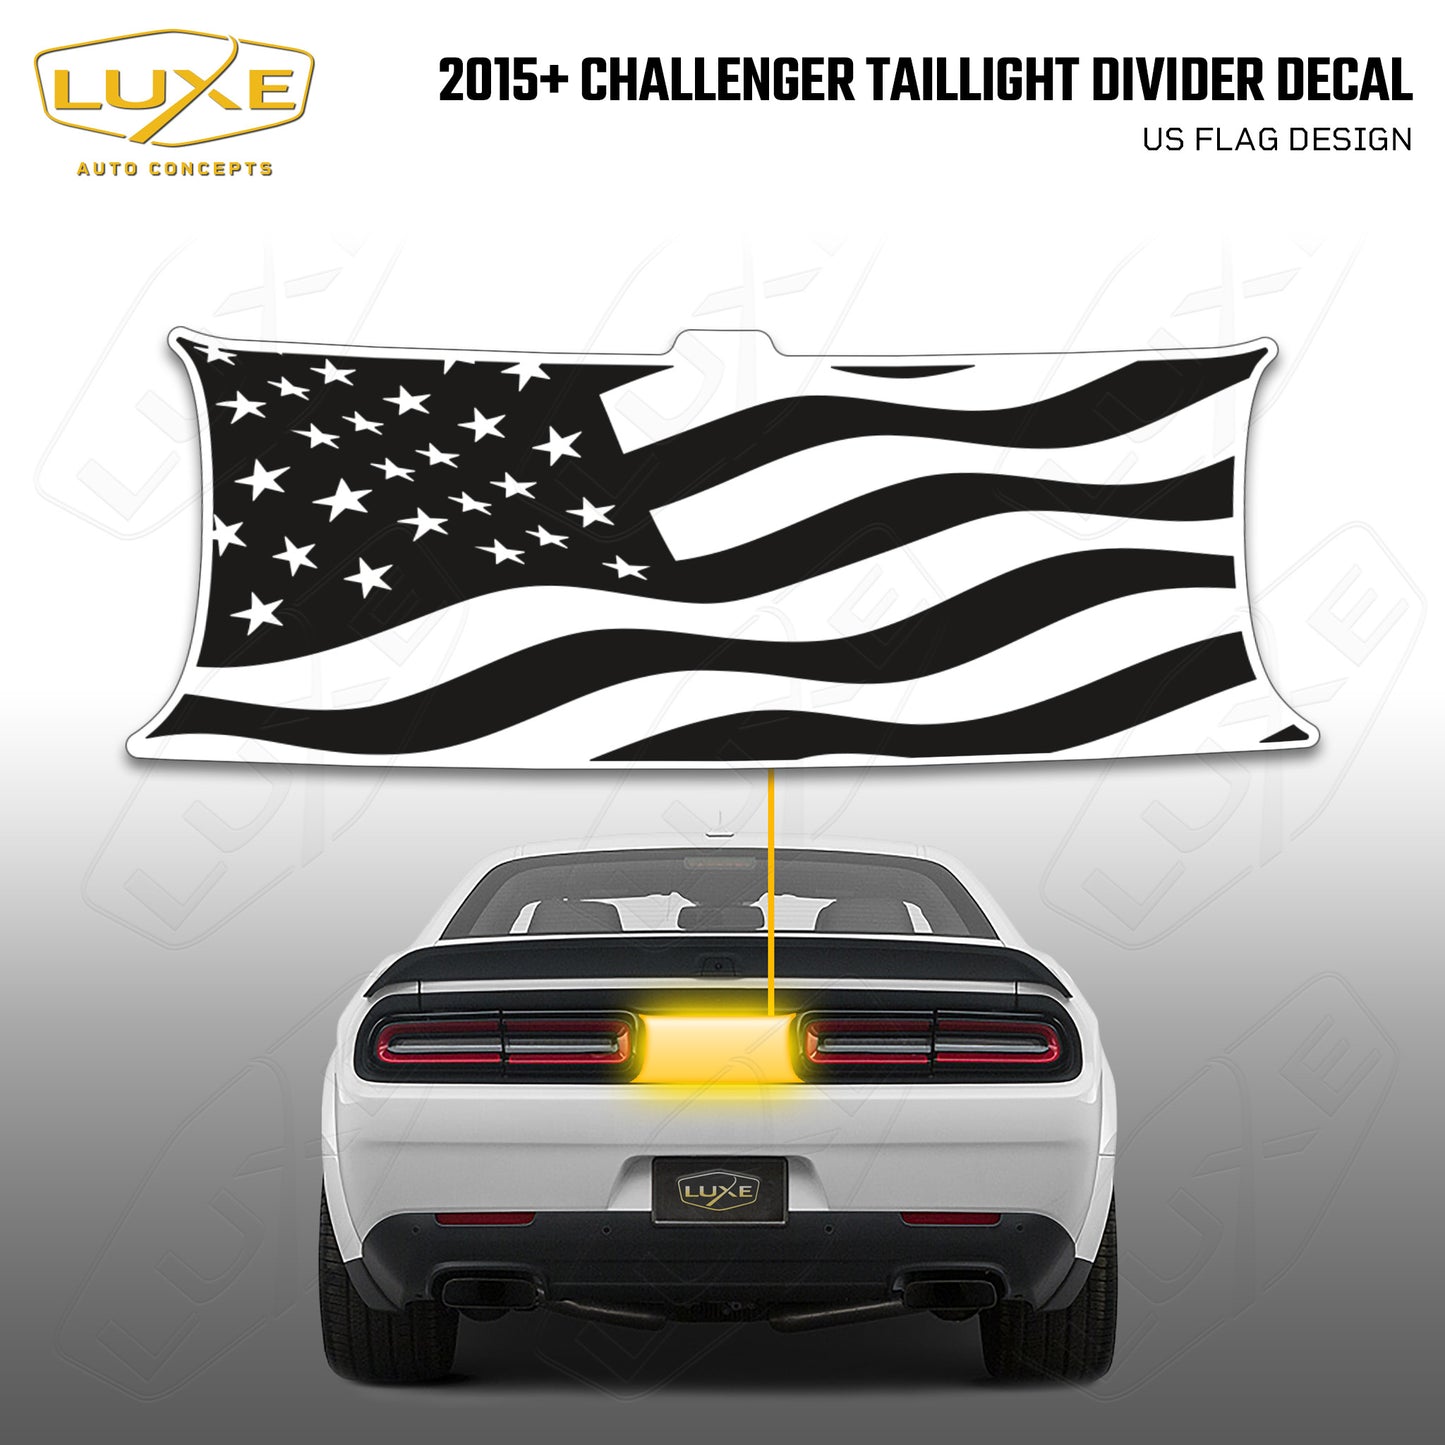 Etiqueta de la bandera de la luz trasera del Challenger 2015+